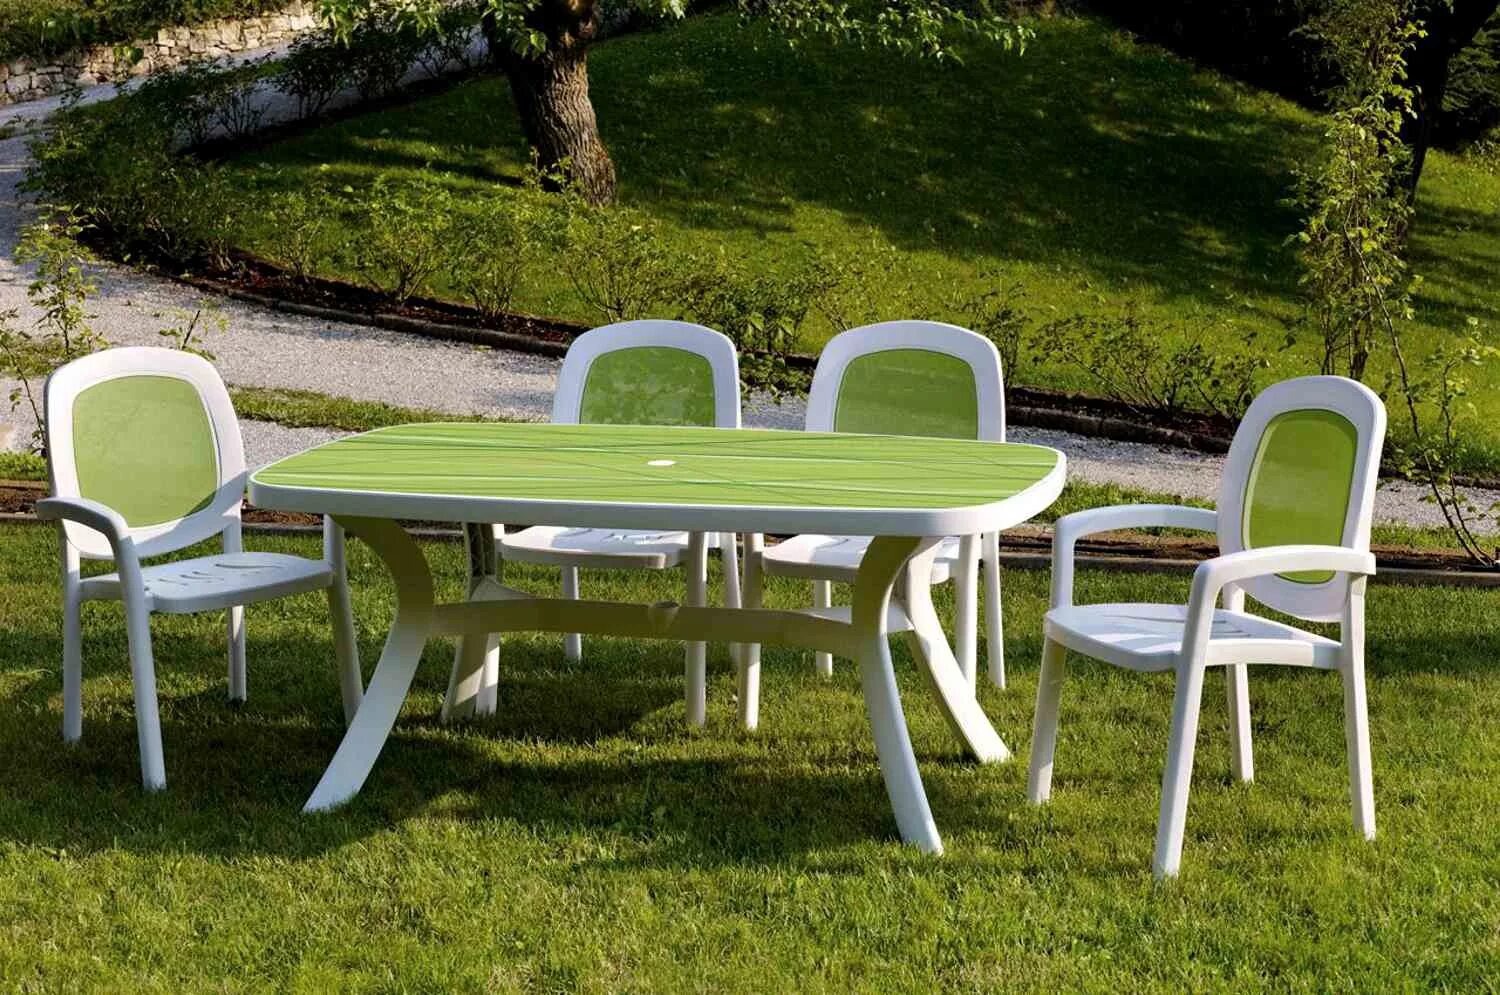 Магазины пластиковая мебель. Nardi Garden Furniture стул. Комплект пластиковой мебели Nardi 1. Садовая мебель из пластика. Пластмассовые столы и стулья.